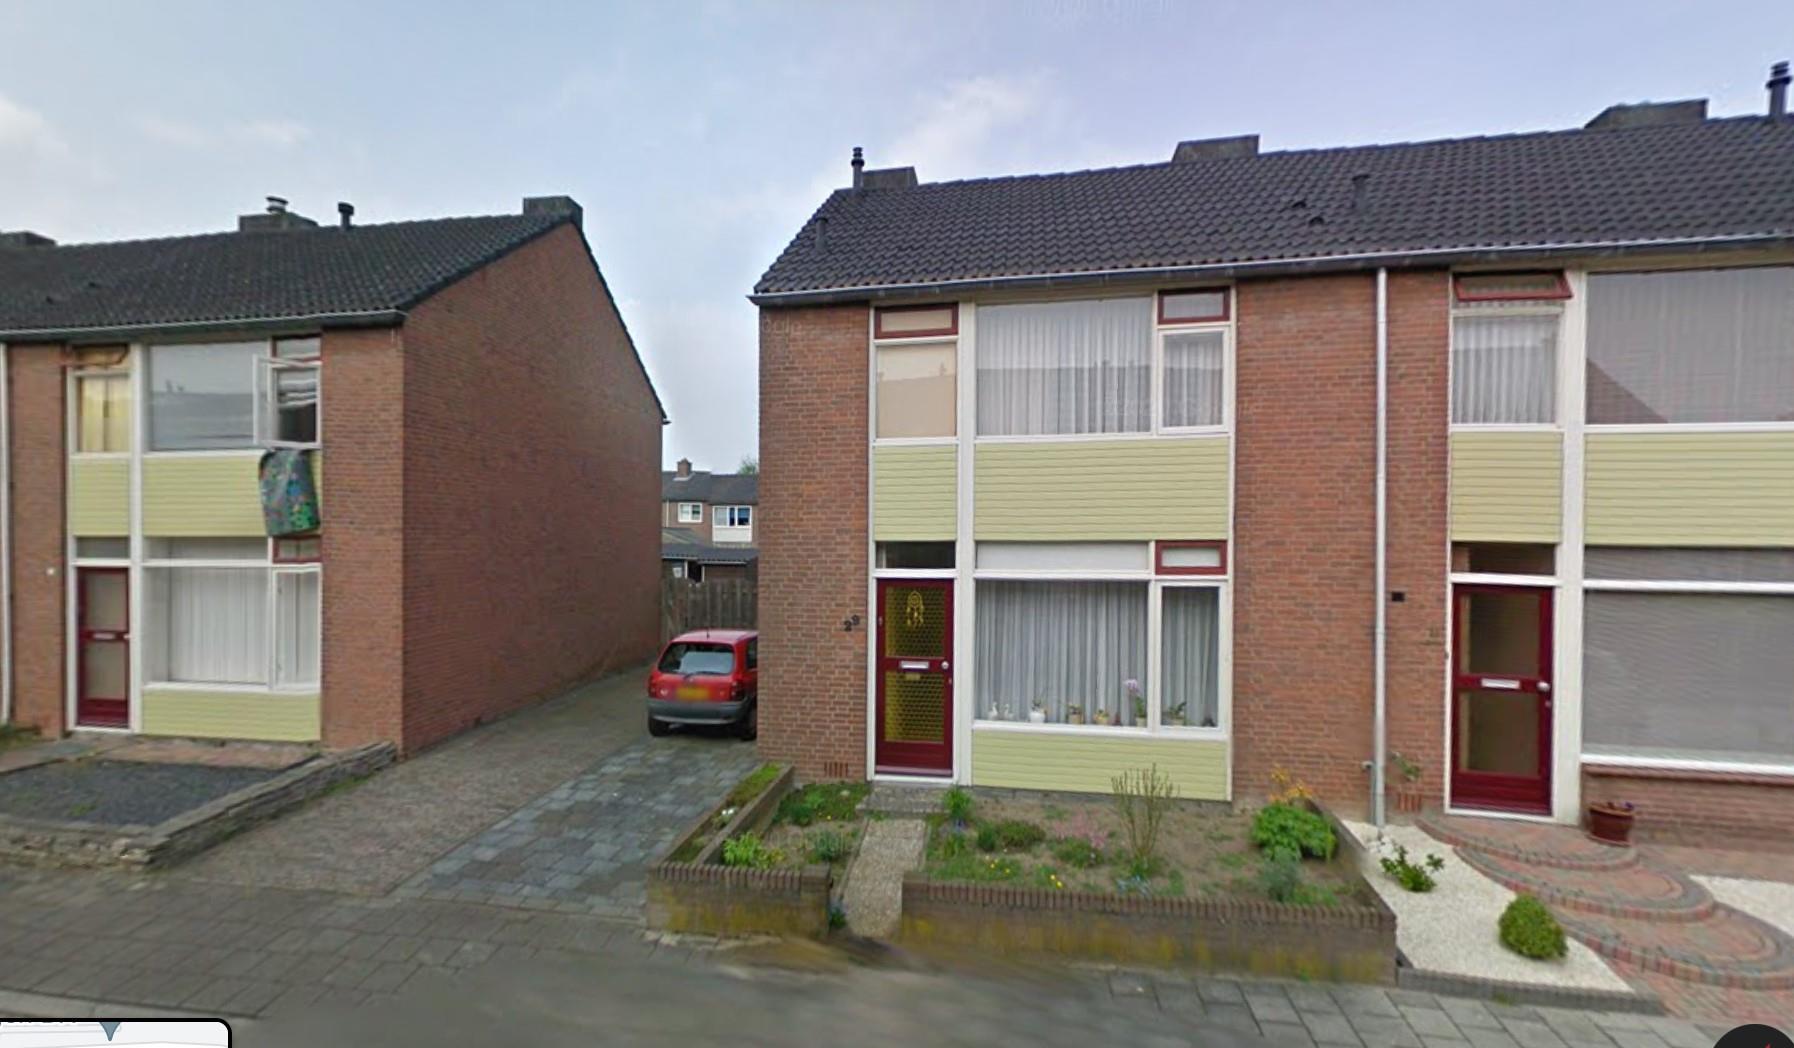 Pr. Beatrixstraat 29, 6566 BT Millingen aan de Rijn, Nederland